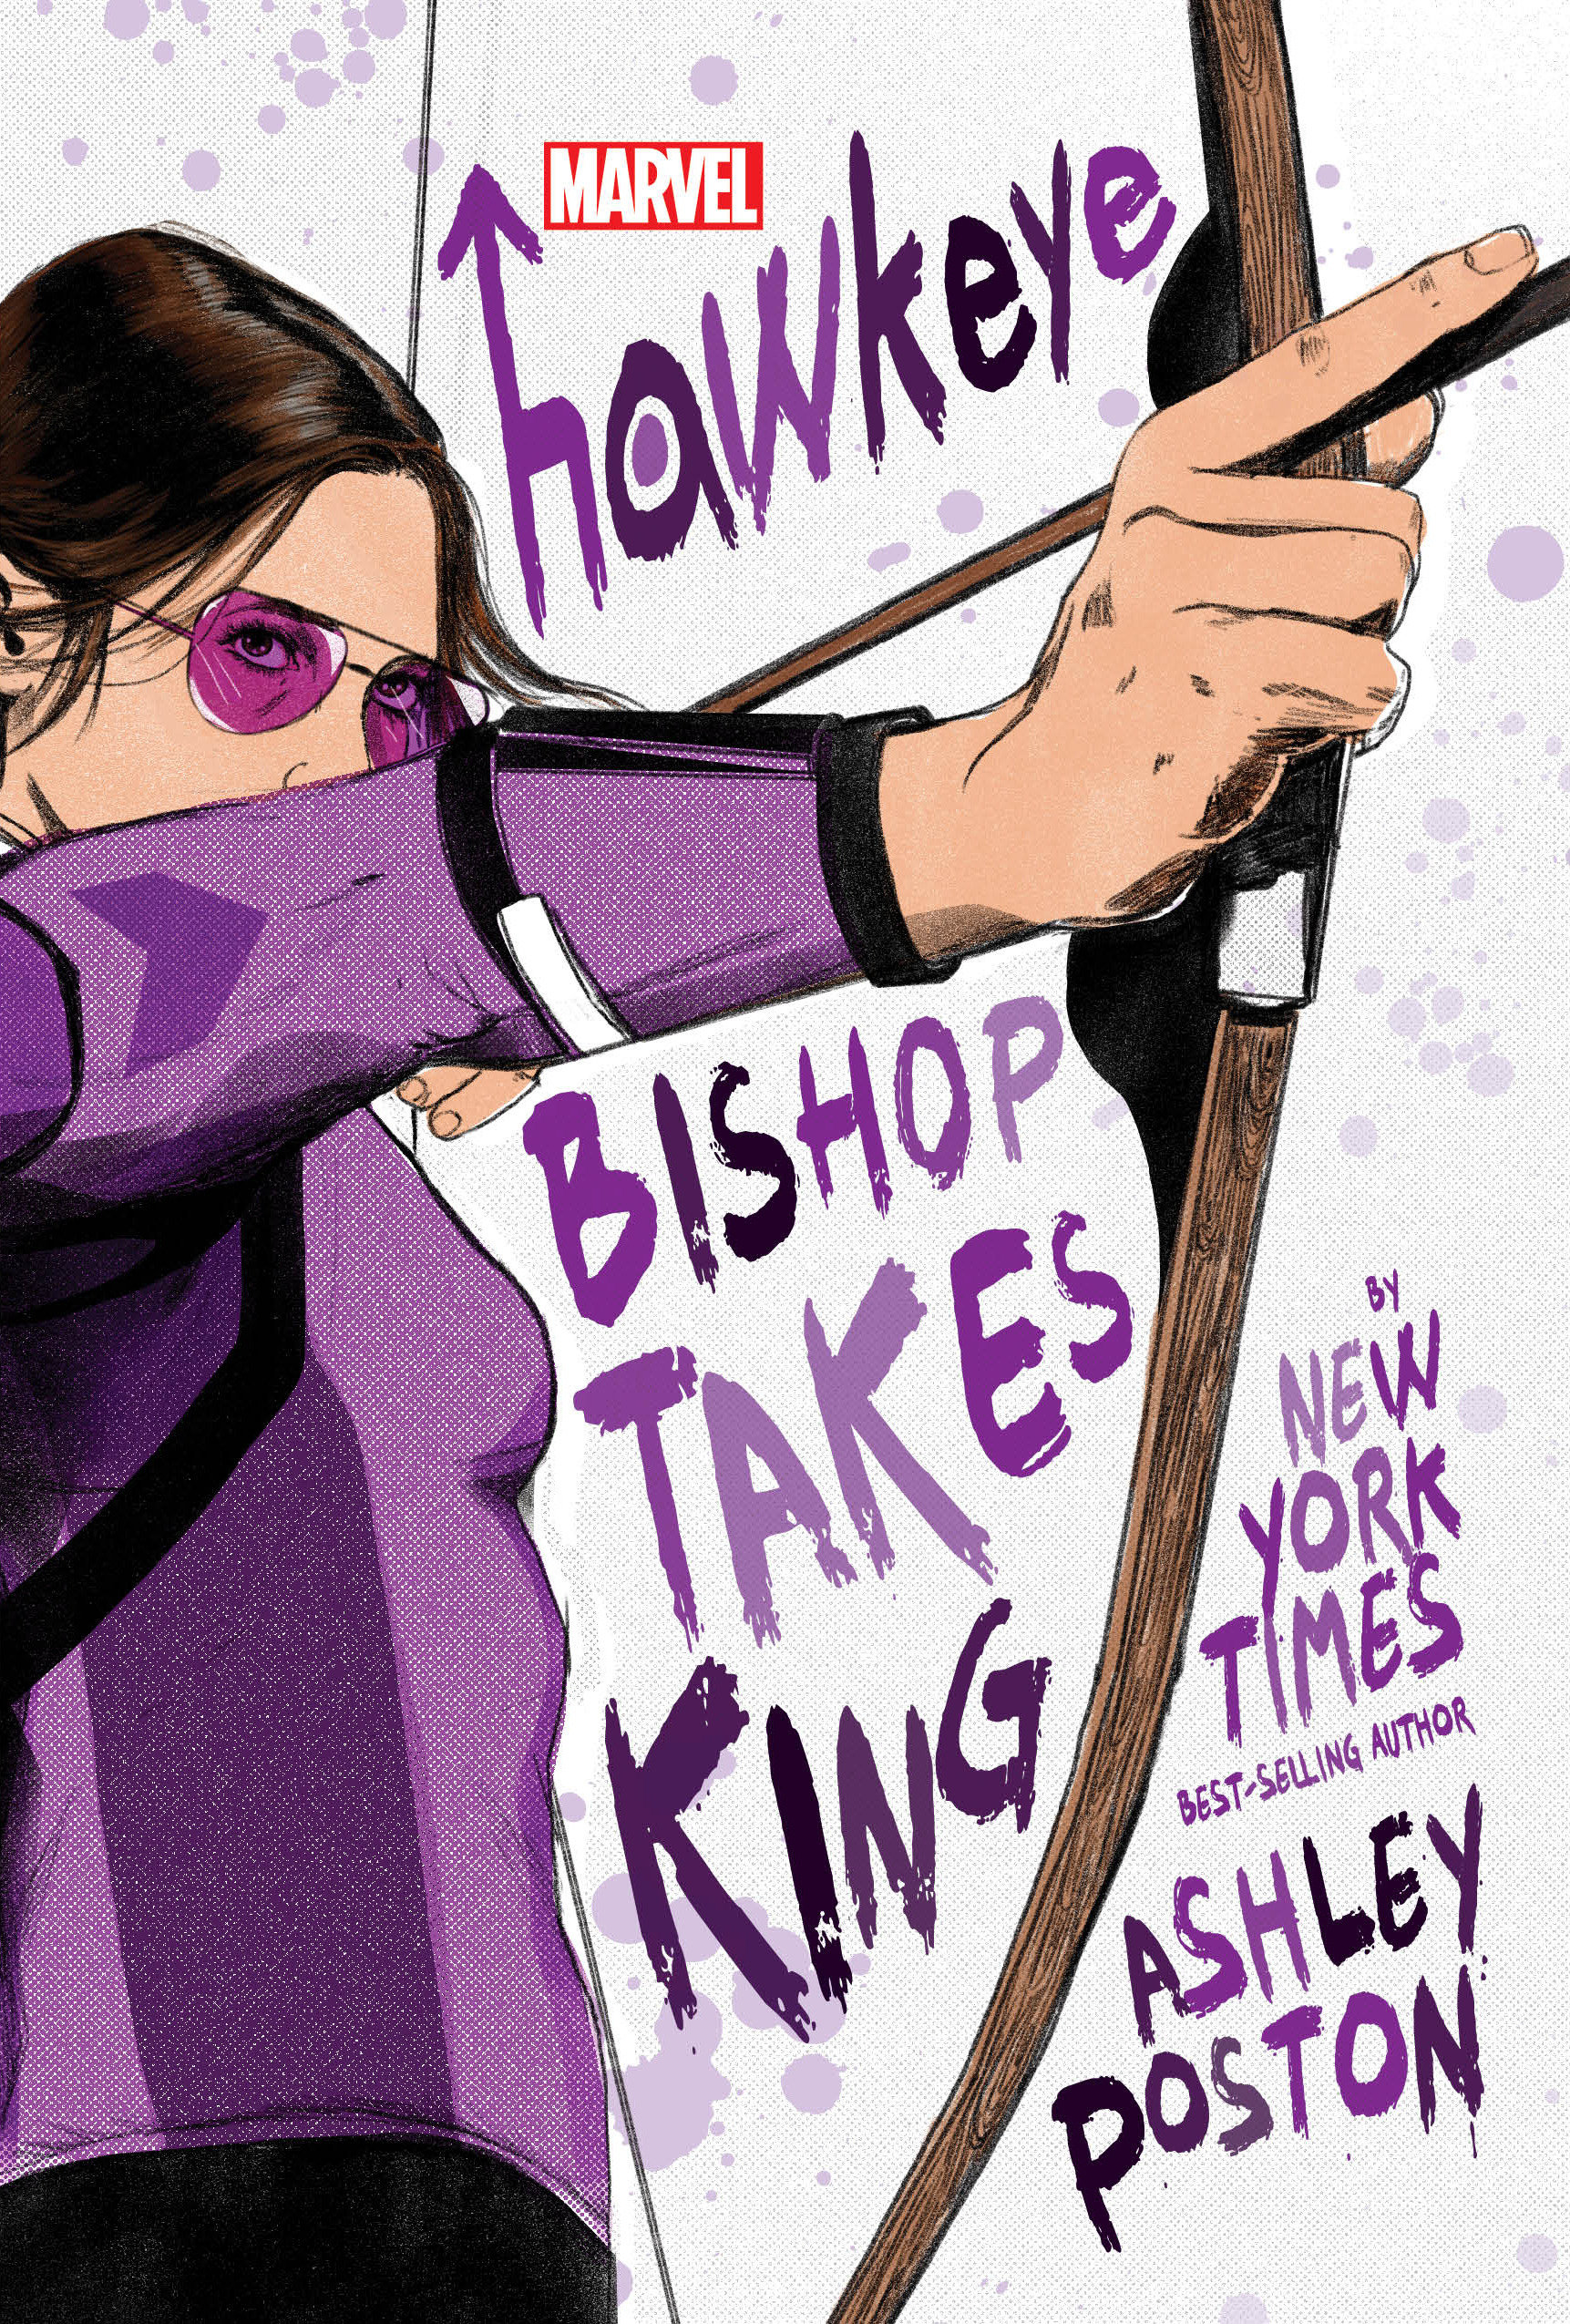 Hawkeye: Bishop Takes King Hardcover Novel